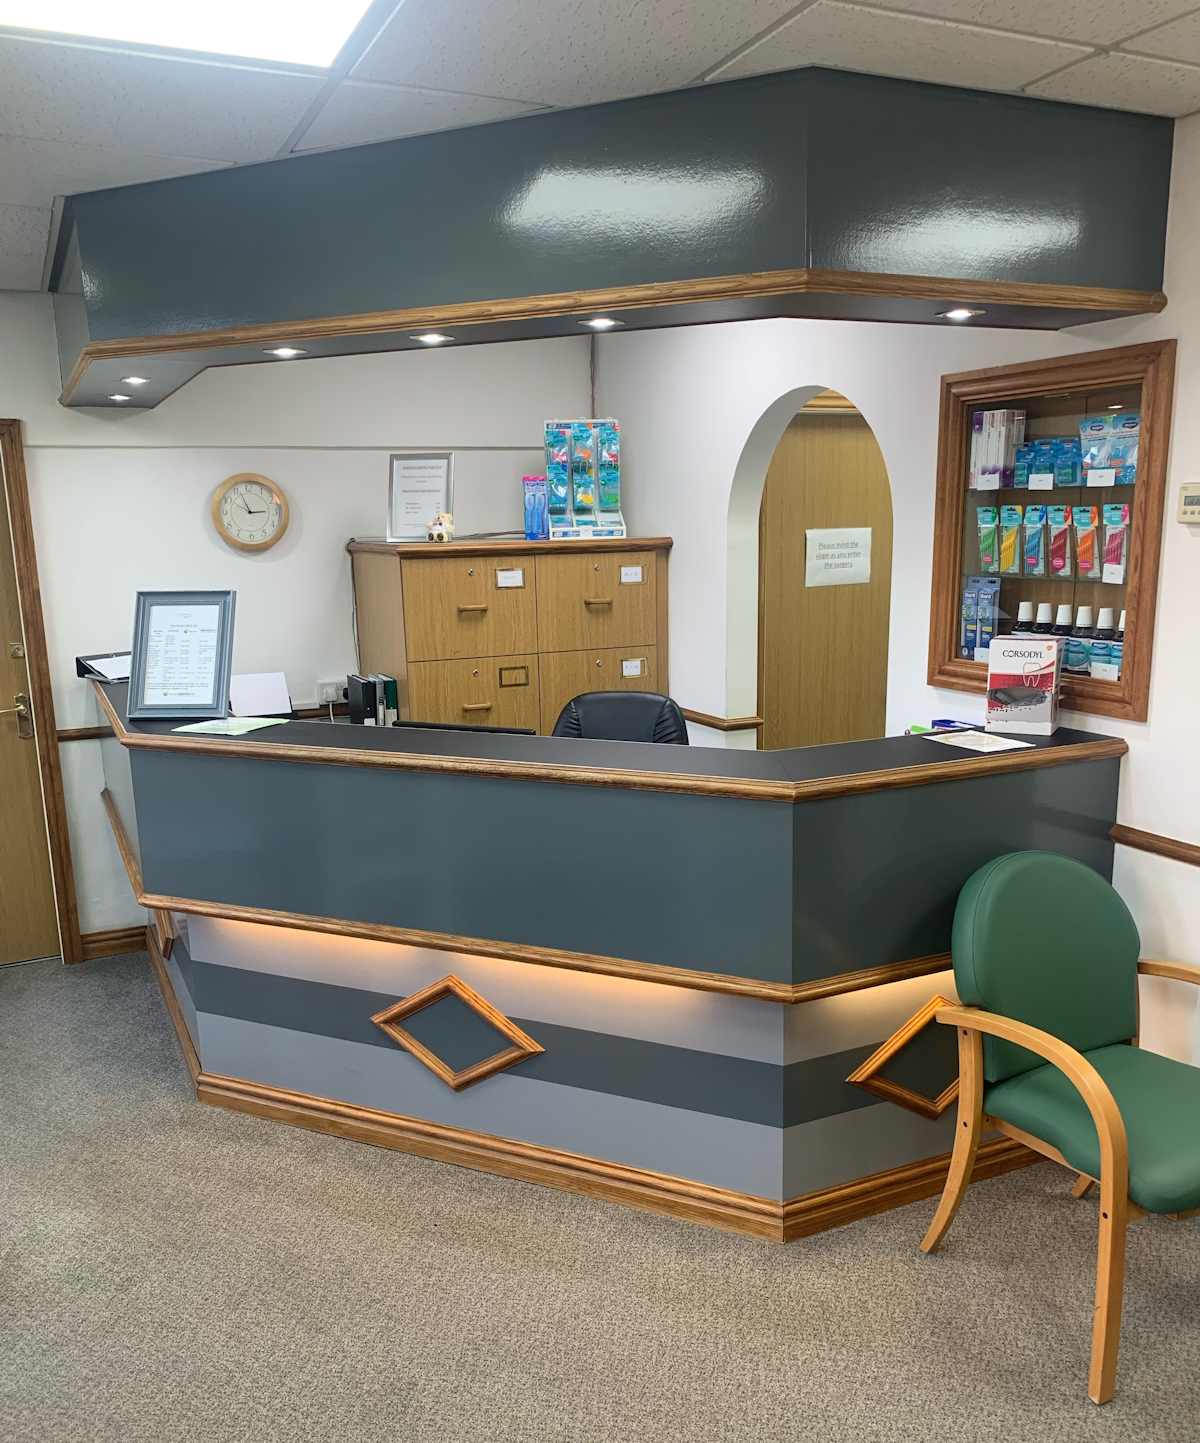 Meet the Team - Reception desk at Alrewas Dental Practice in Burton on Trent